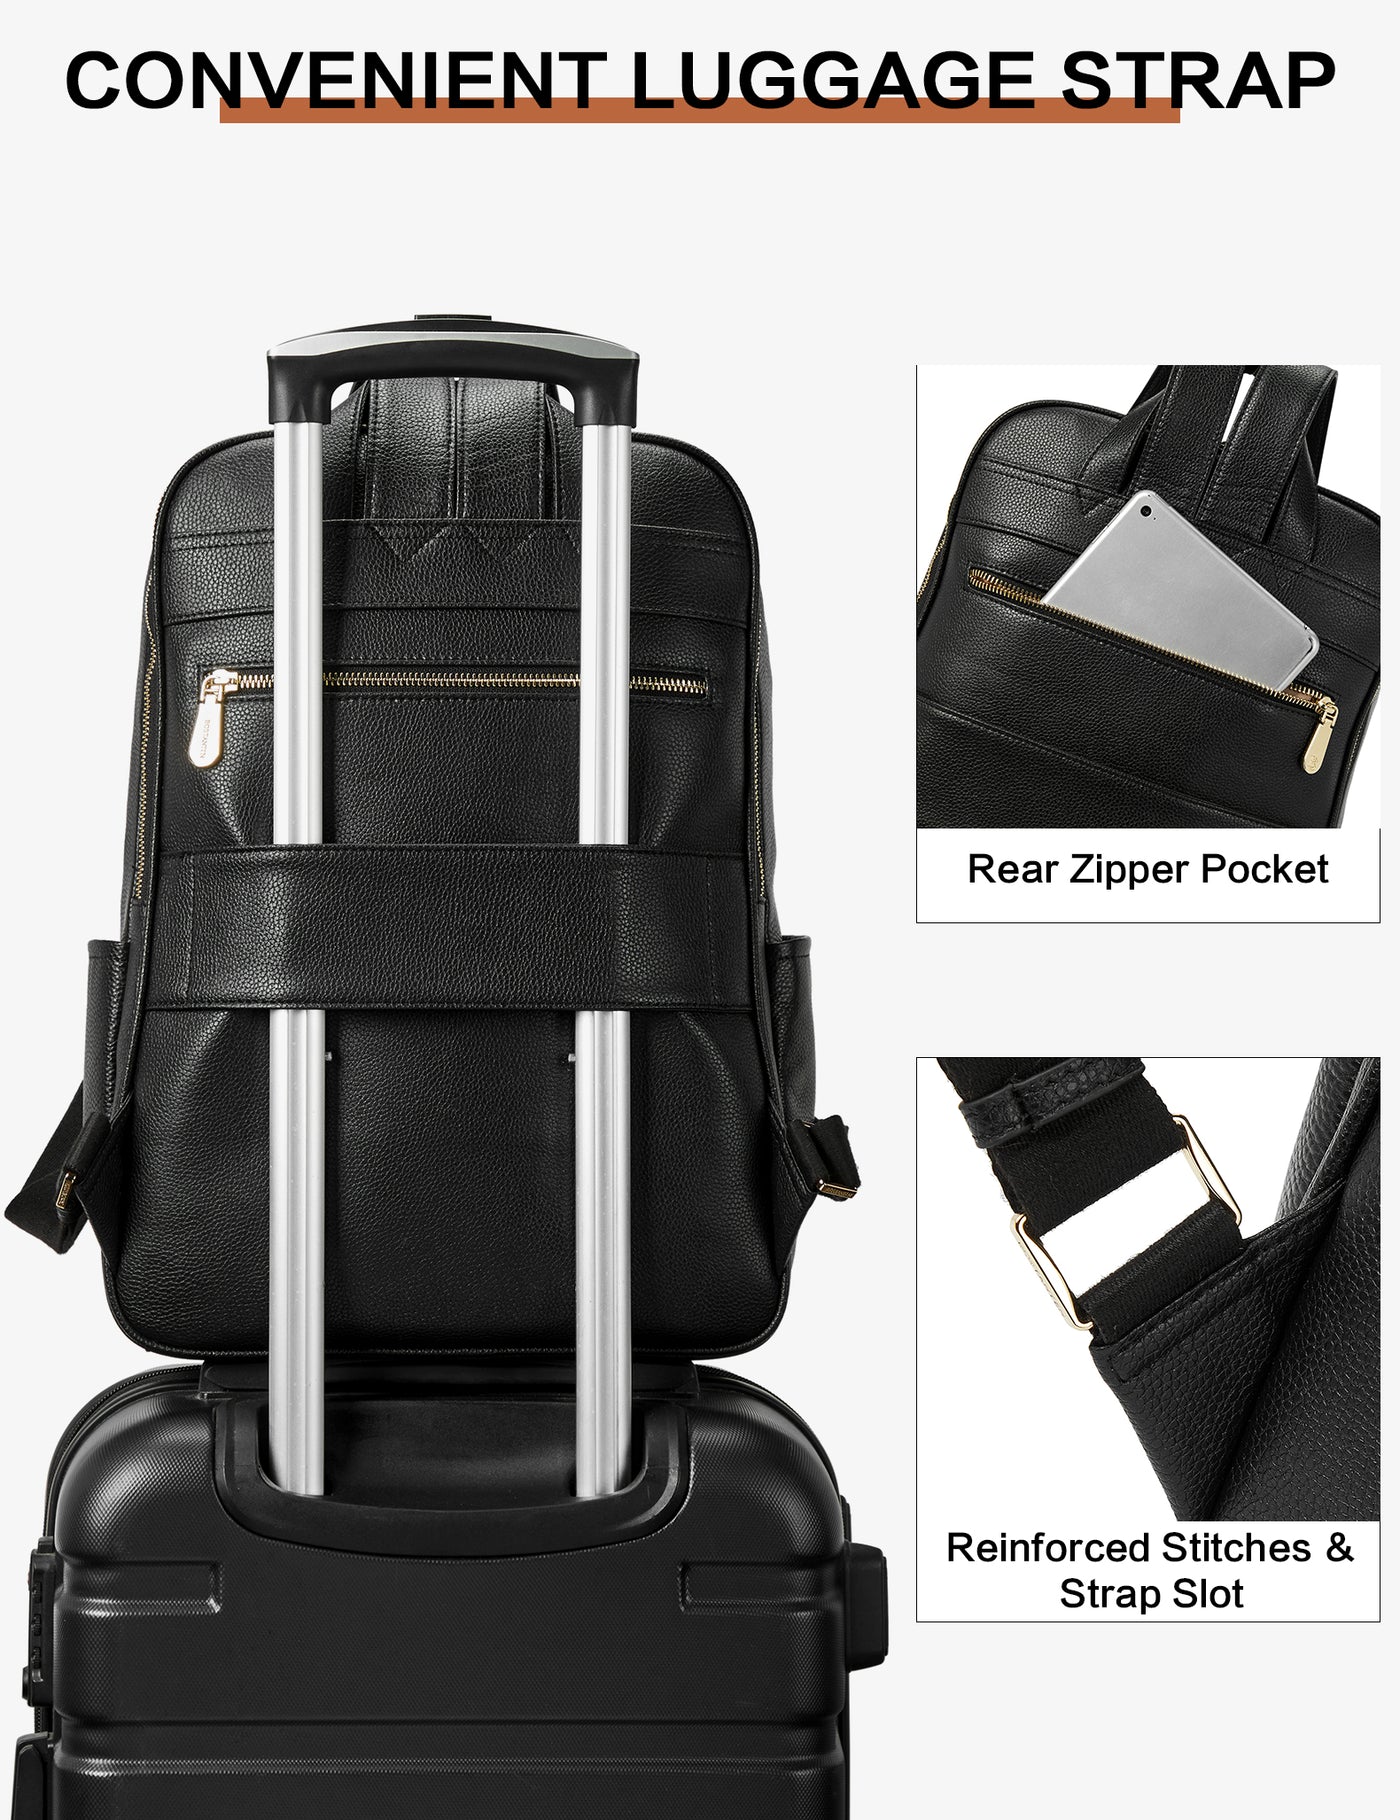 Stylish and Functional Designer Laptop Backpack for Women | Bostanten ...